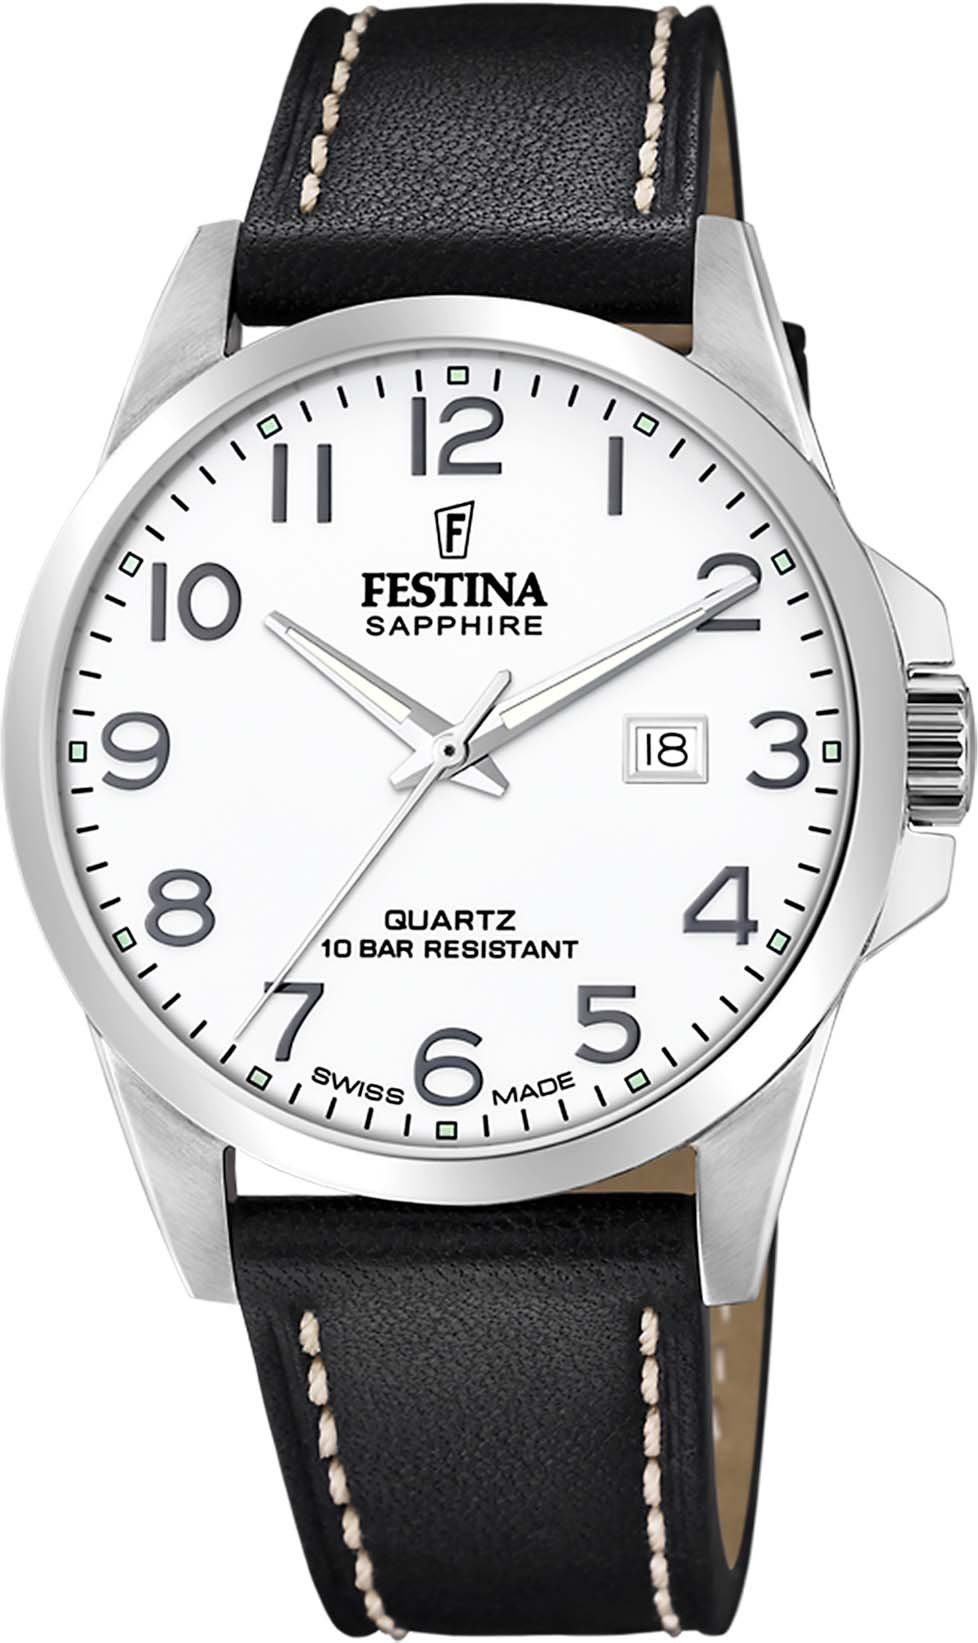 Festina Schweizer Uhr Swiss Made, F20025/1